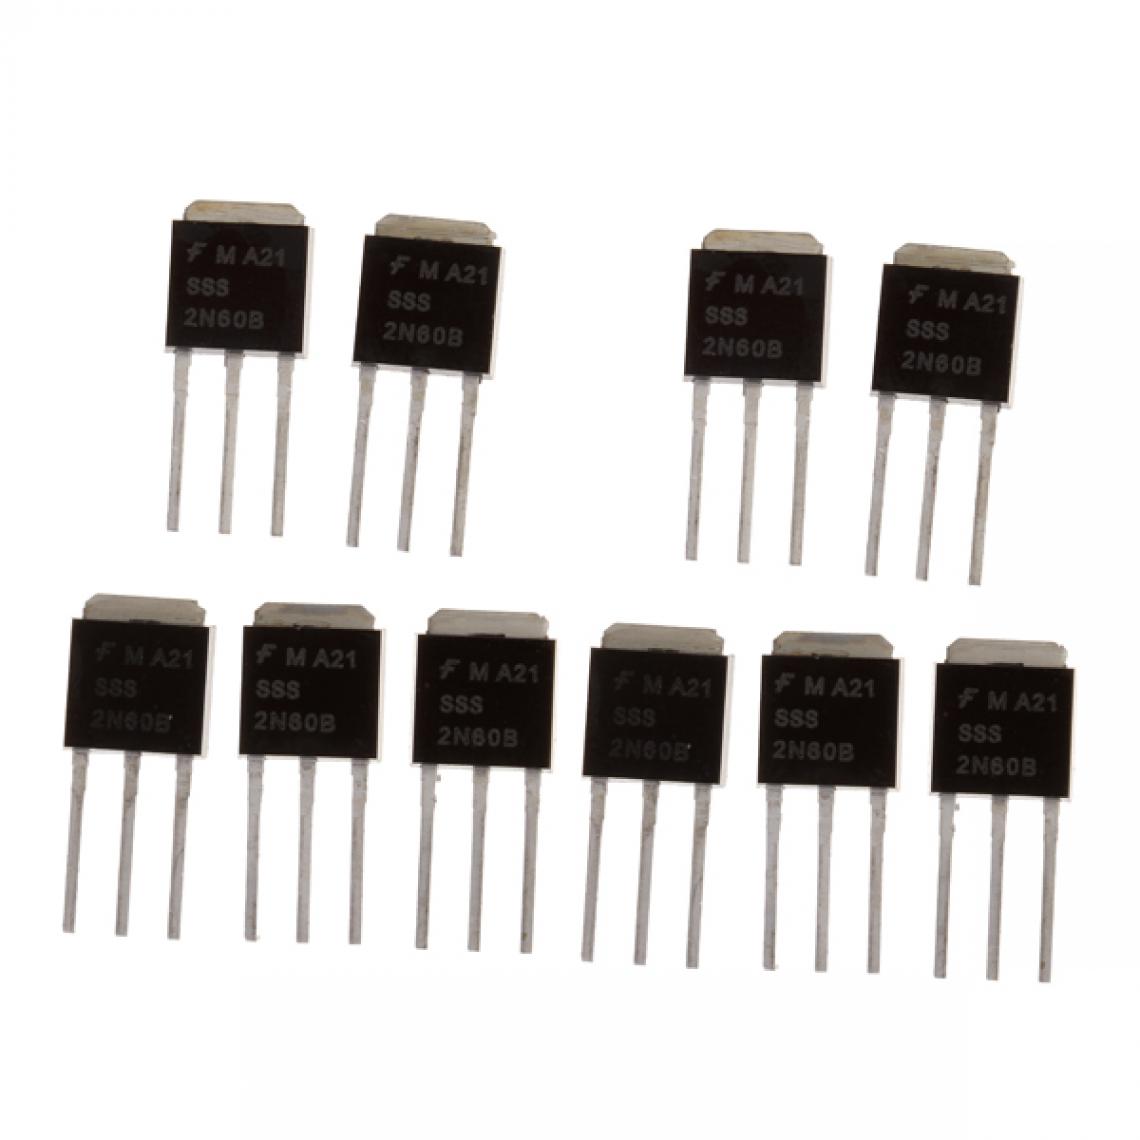 marque generique - 10Pcs 2N60 TO-251 Transistor MOSFET De Puissance à Canal N à Commutation Rapide 600V 2A - Appareils de mesure